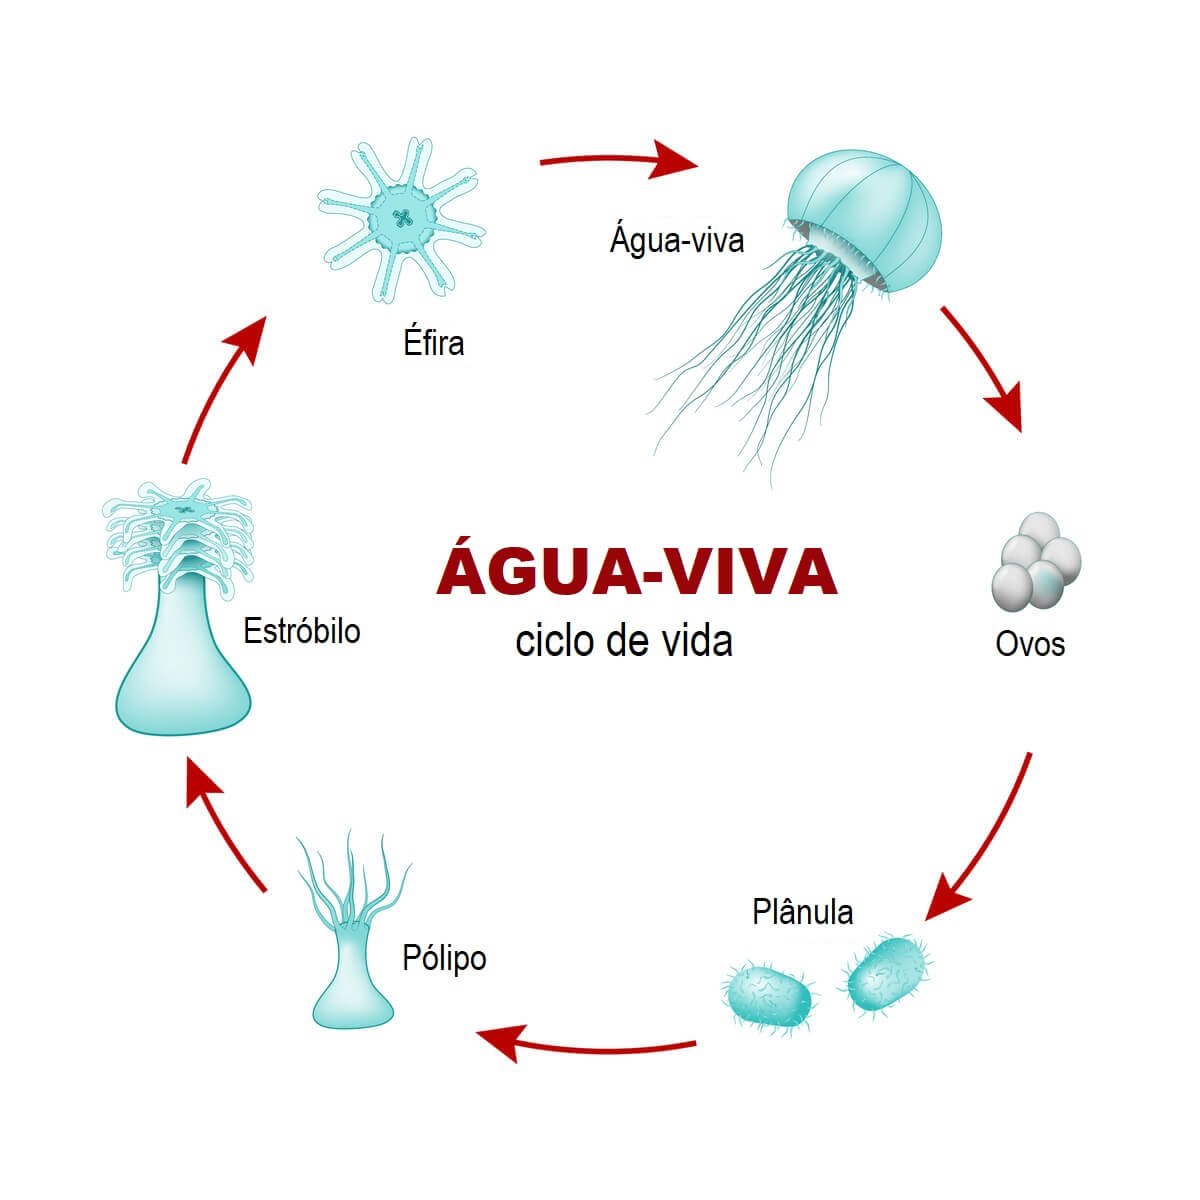 Reprodução alternada: ciclo de vida da água-viva